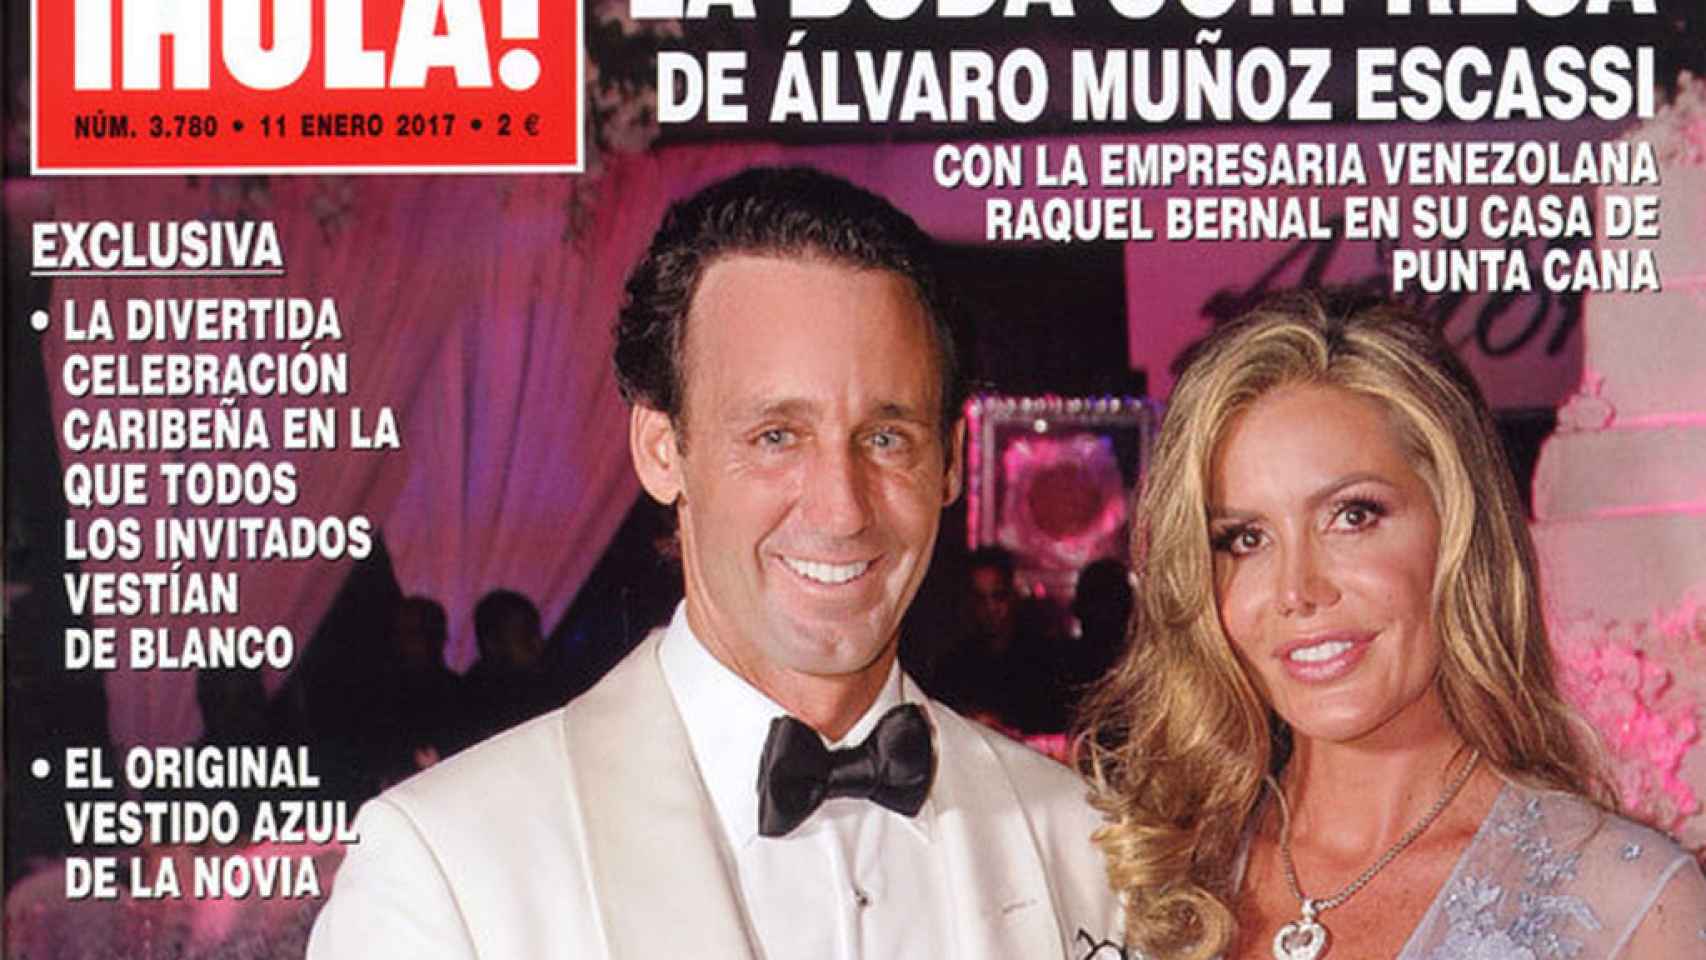 Álvaro Muñoz Escassi y Raquel Bernal en su boda en la portda de '¡HOLA!'.